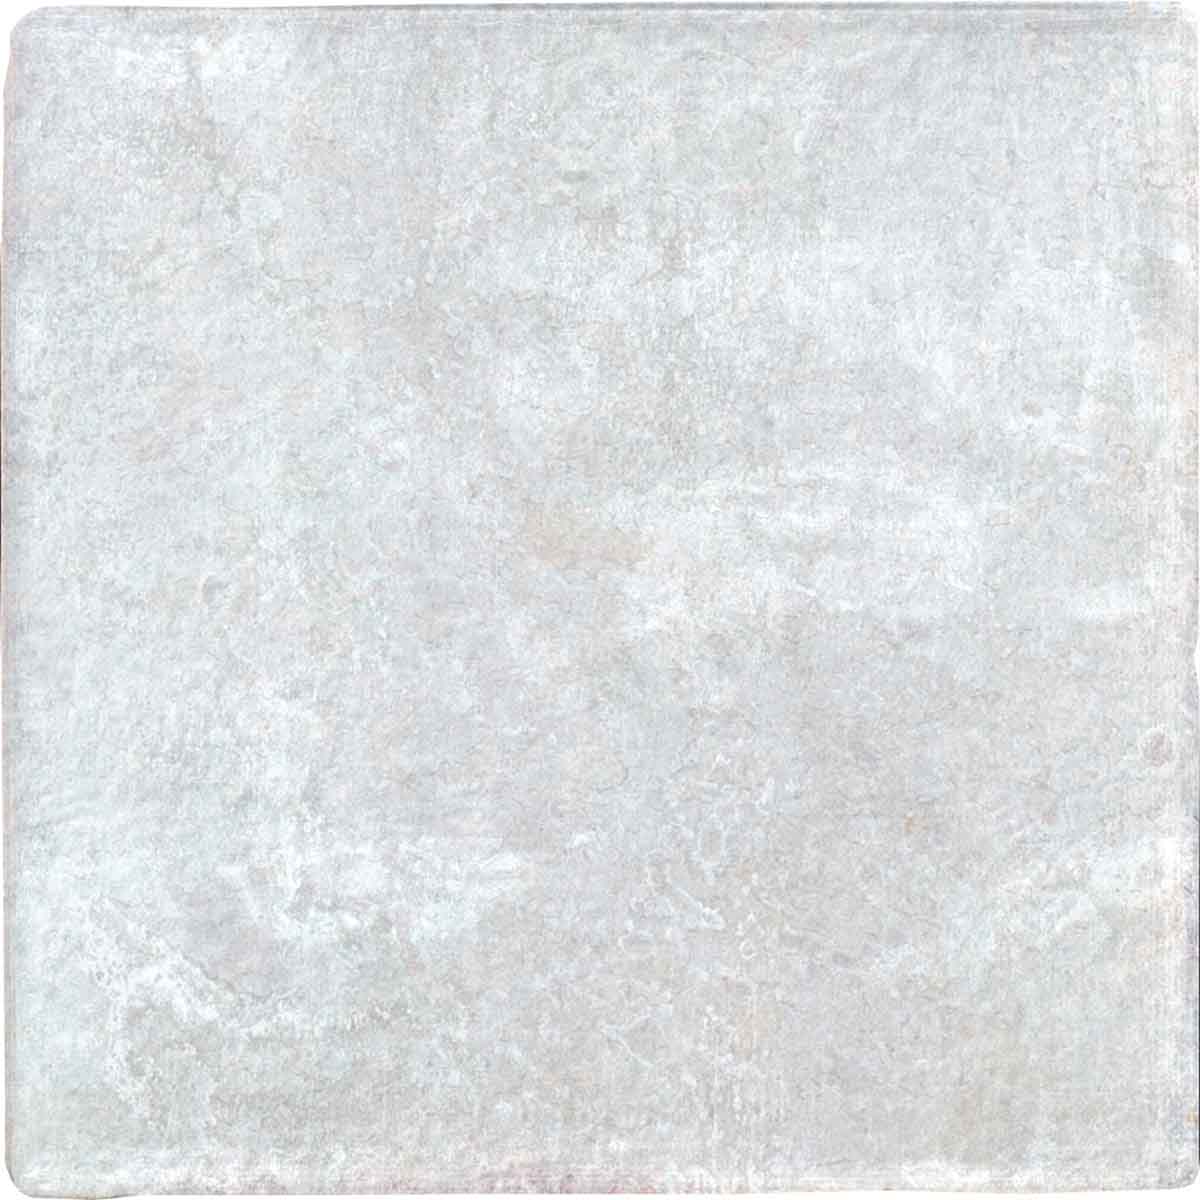 Dyroy White Decor Wall Tile 10x10cm Gloss